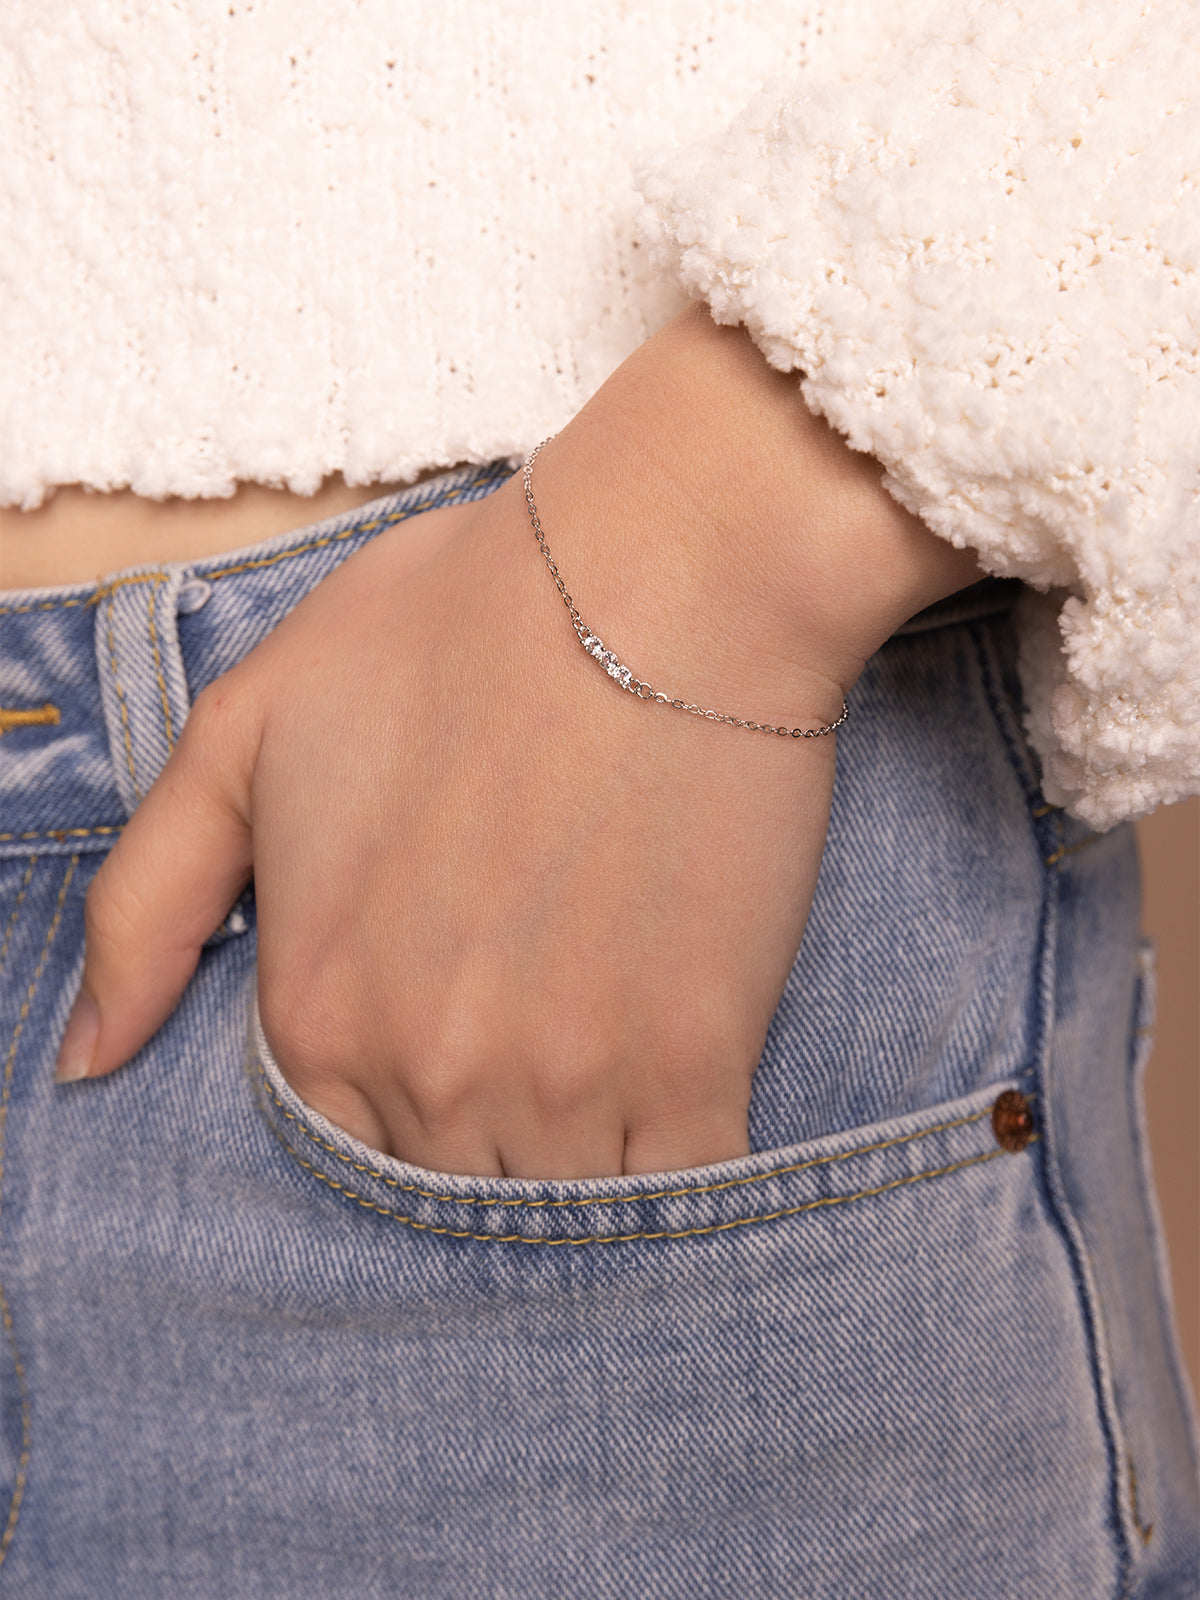 Girls 925 Sterling Silver Bracelet Women's Delicate Stick Chain | eBay